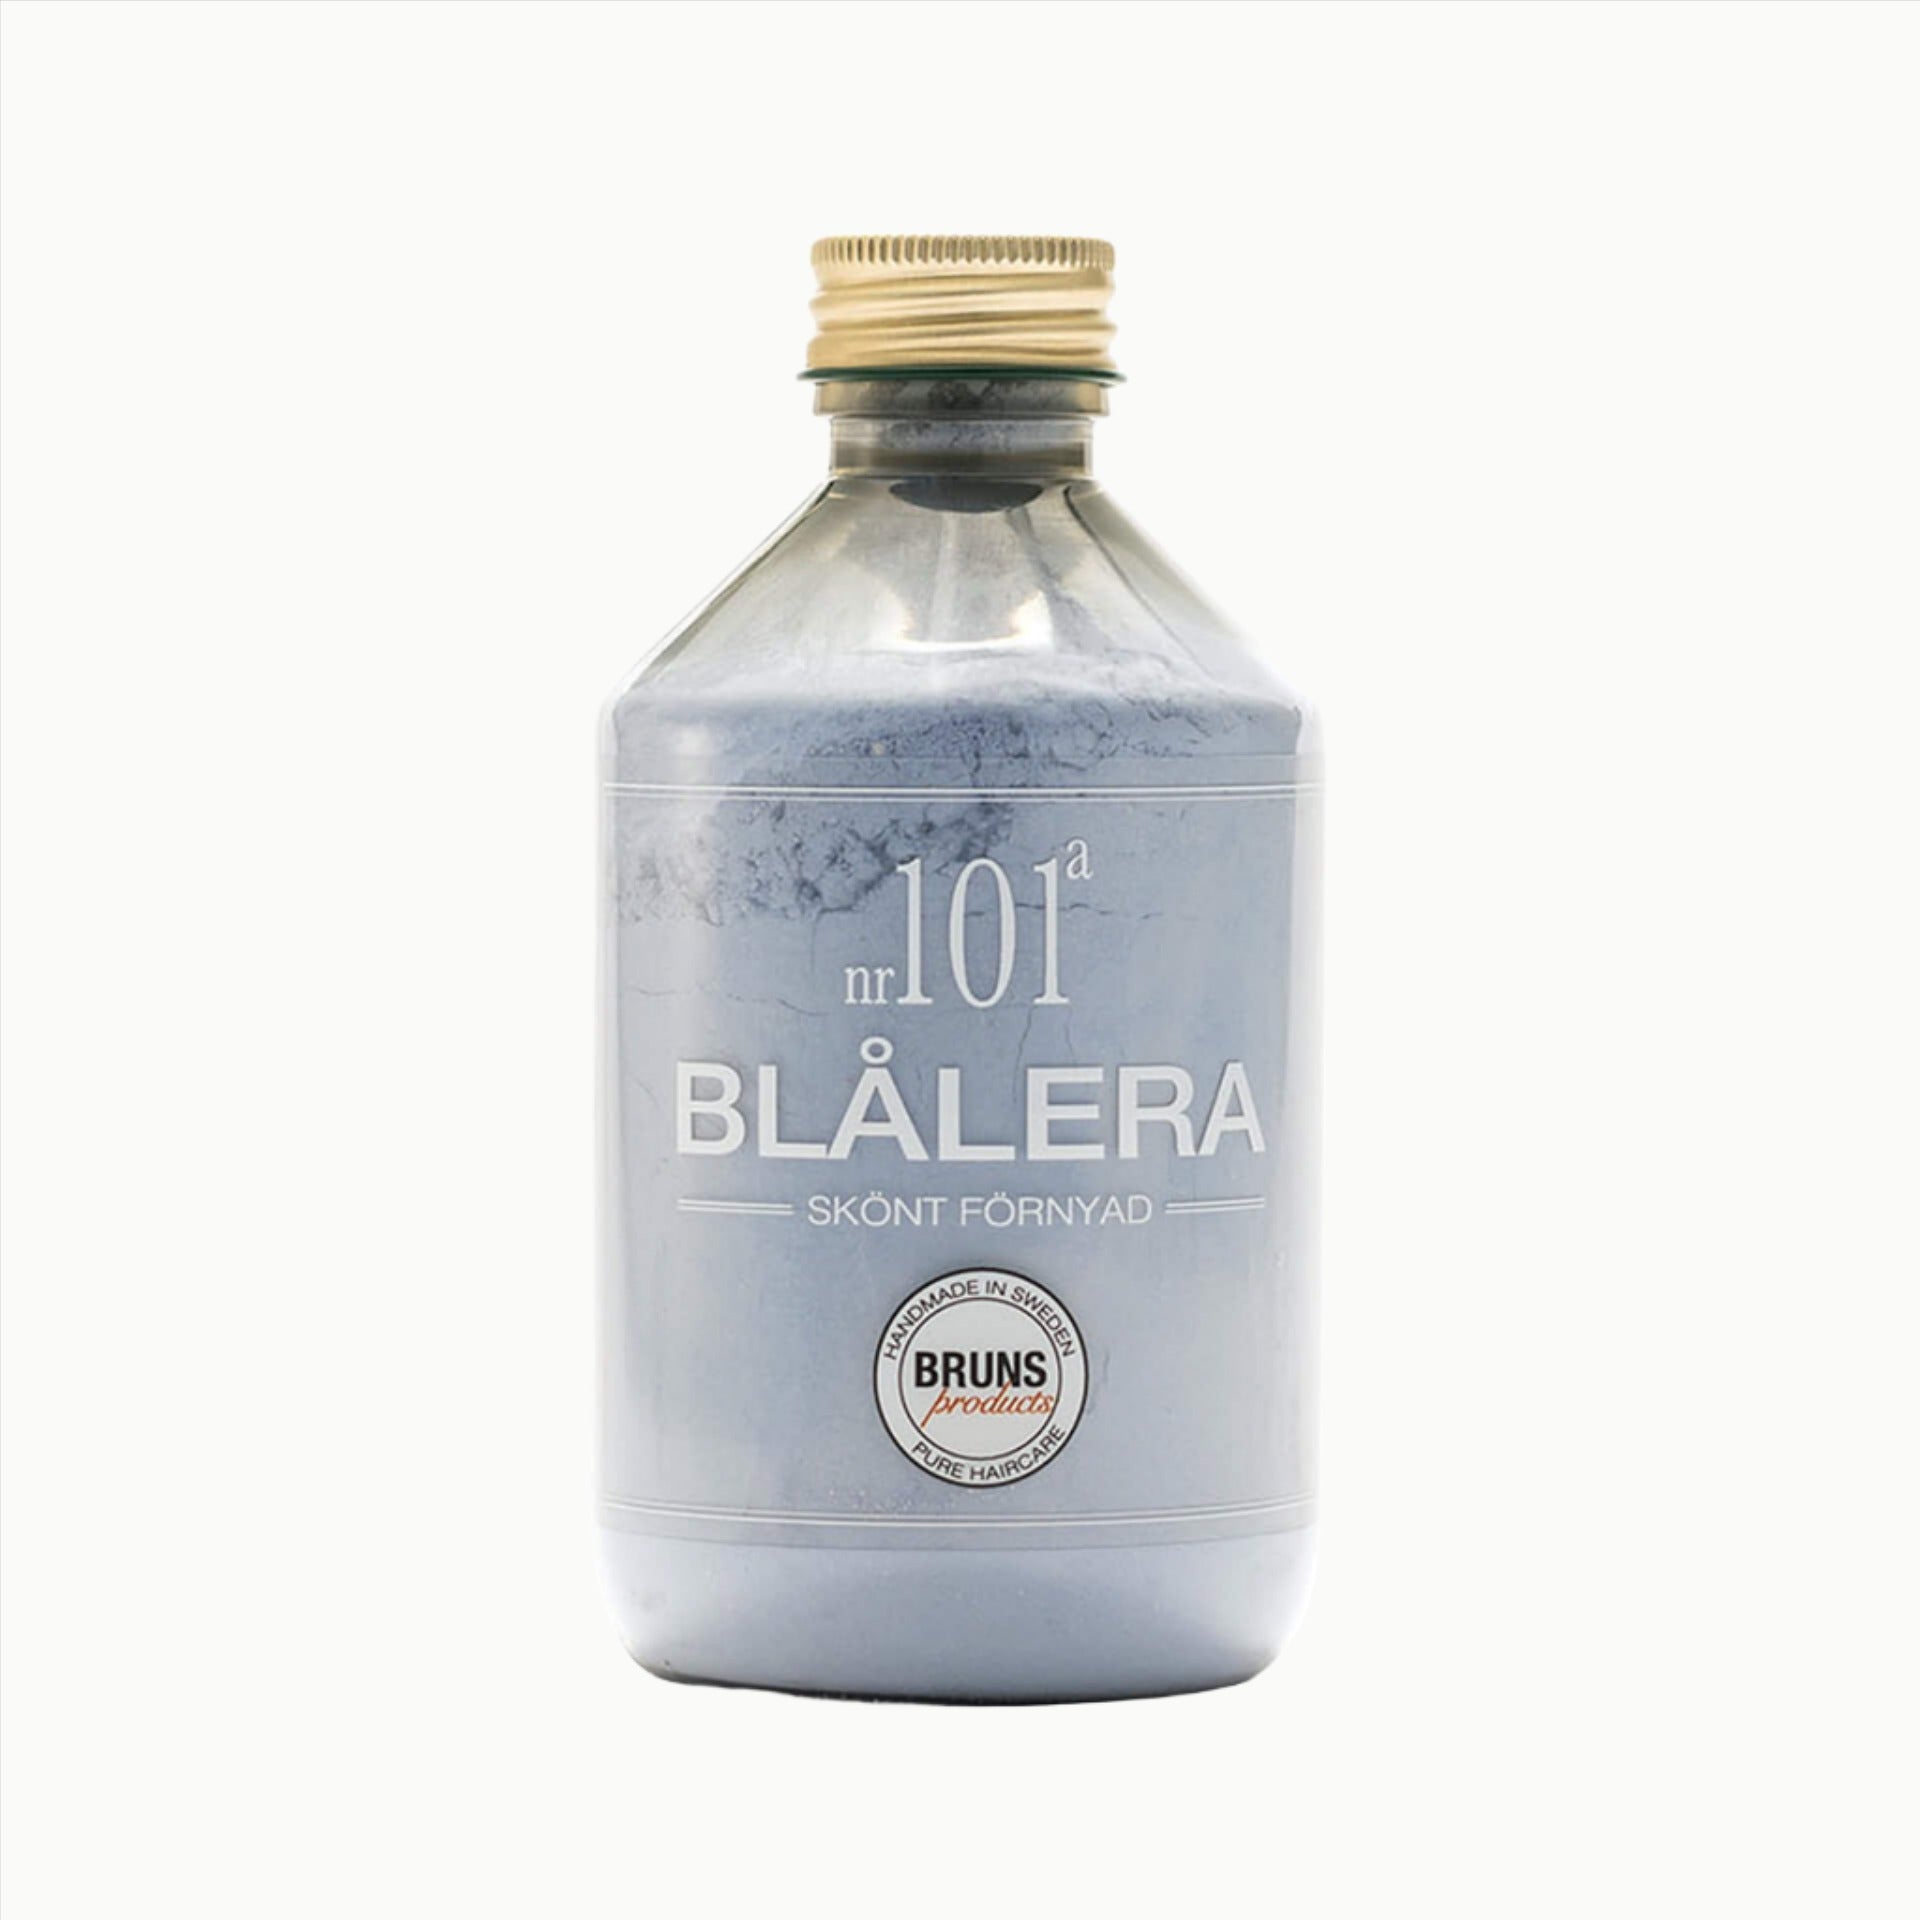 BLÅLERA Nº101